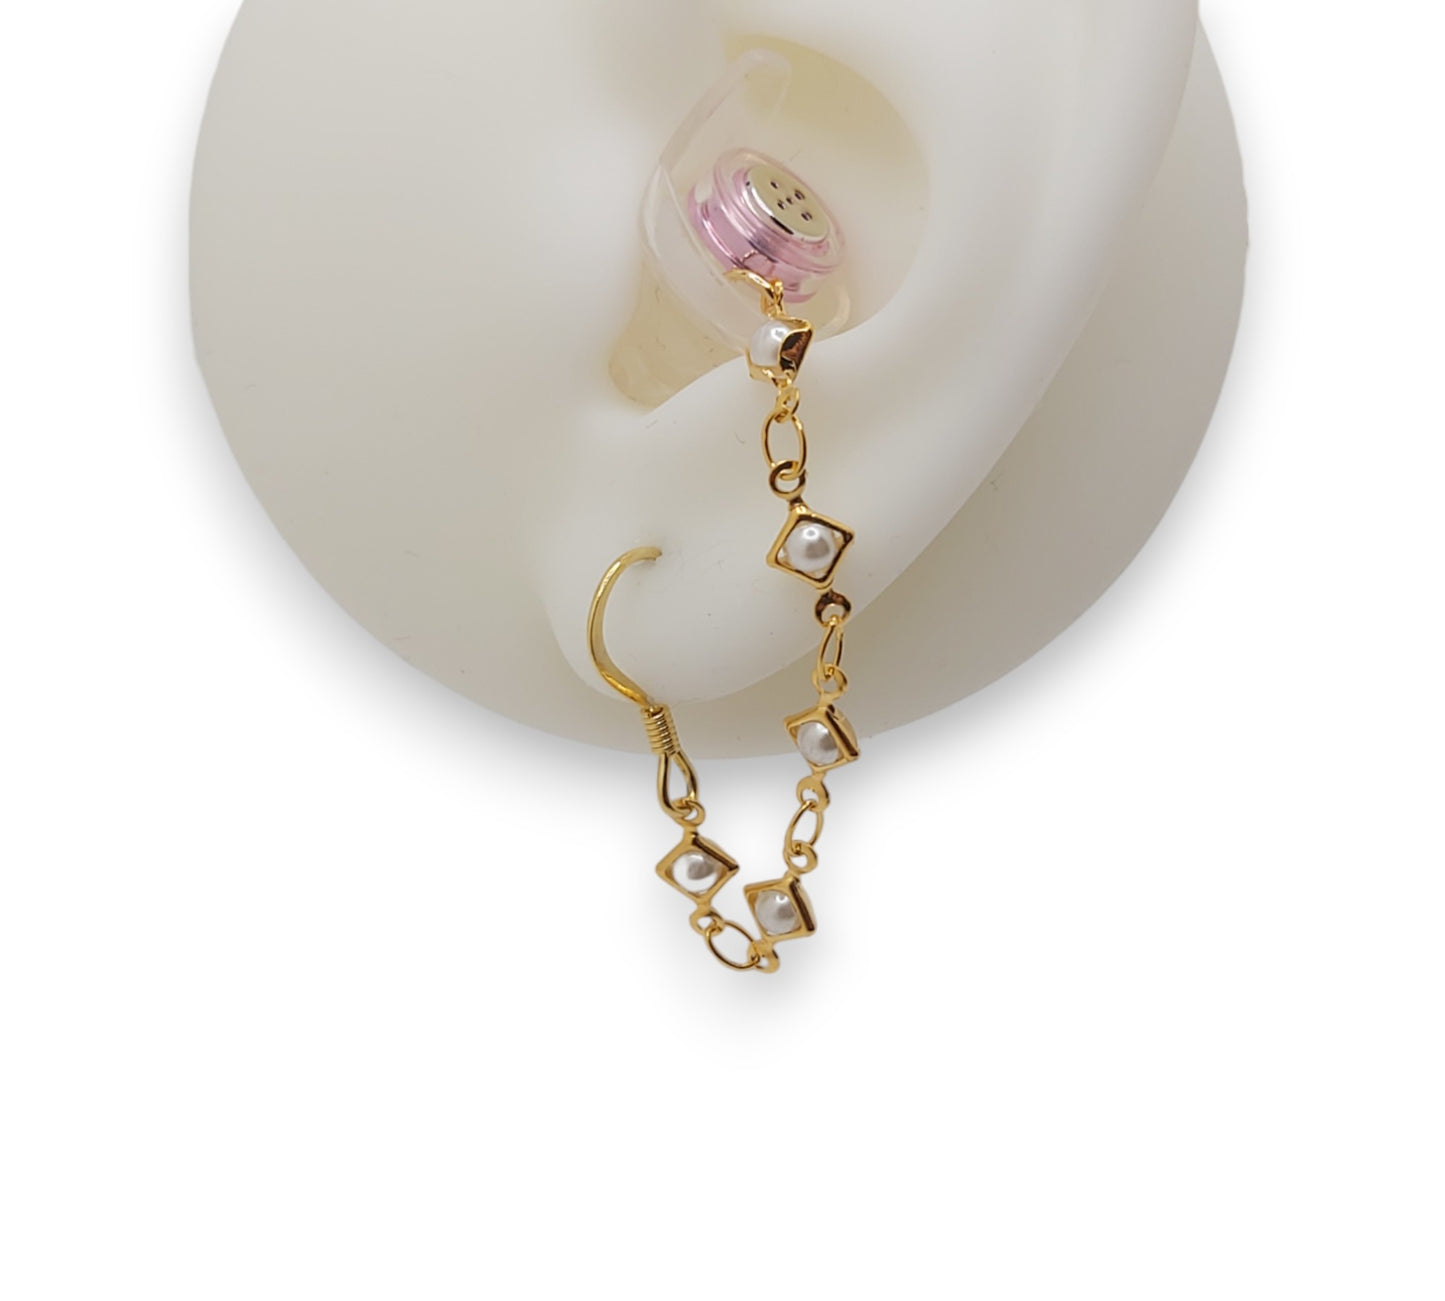 EarLinks de perlas de oro delicado